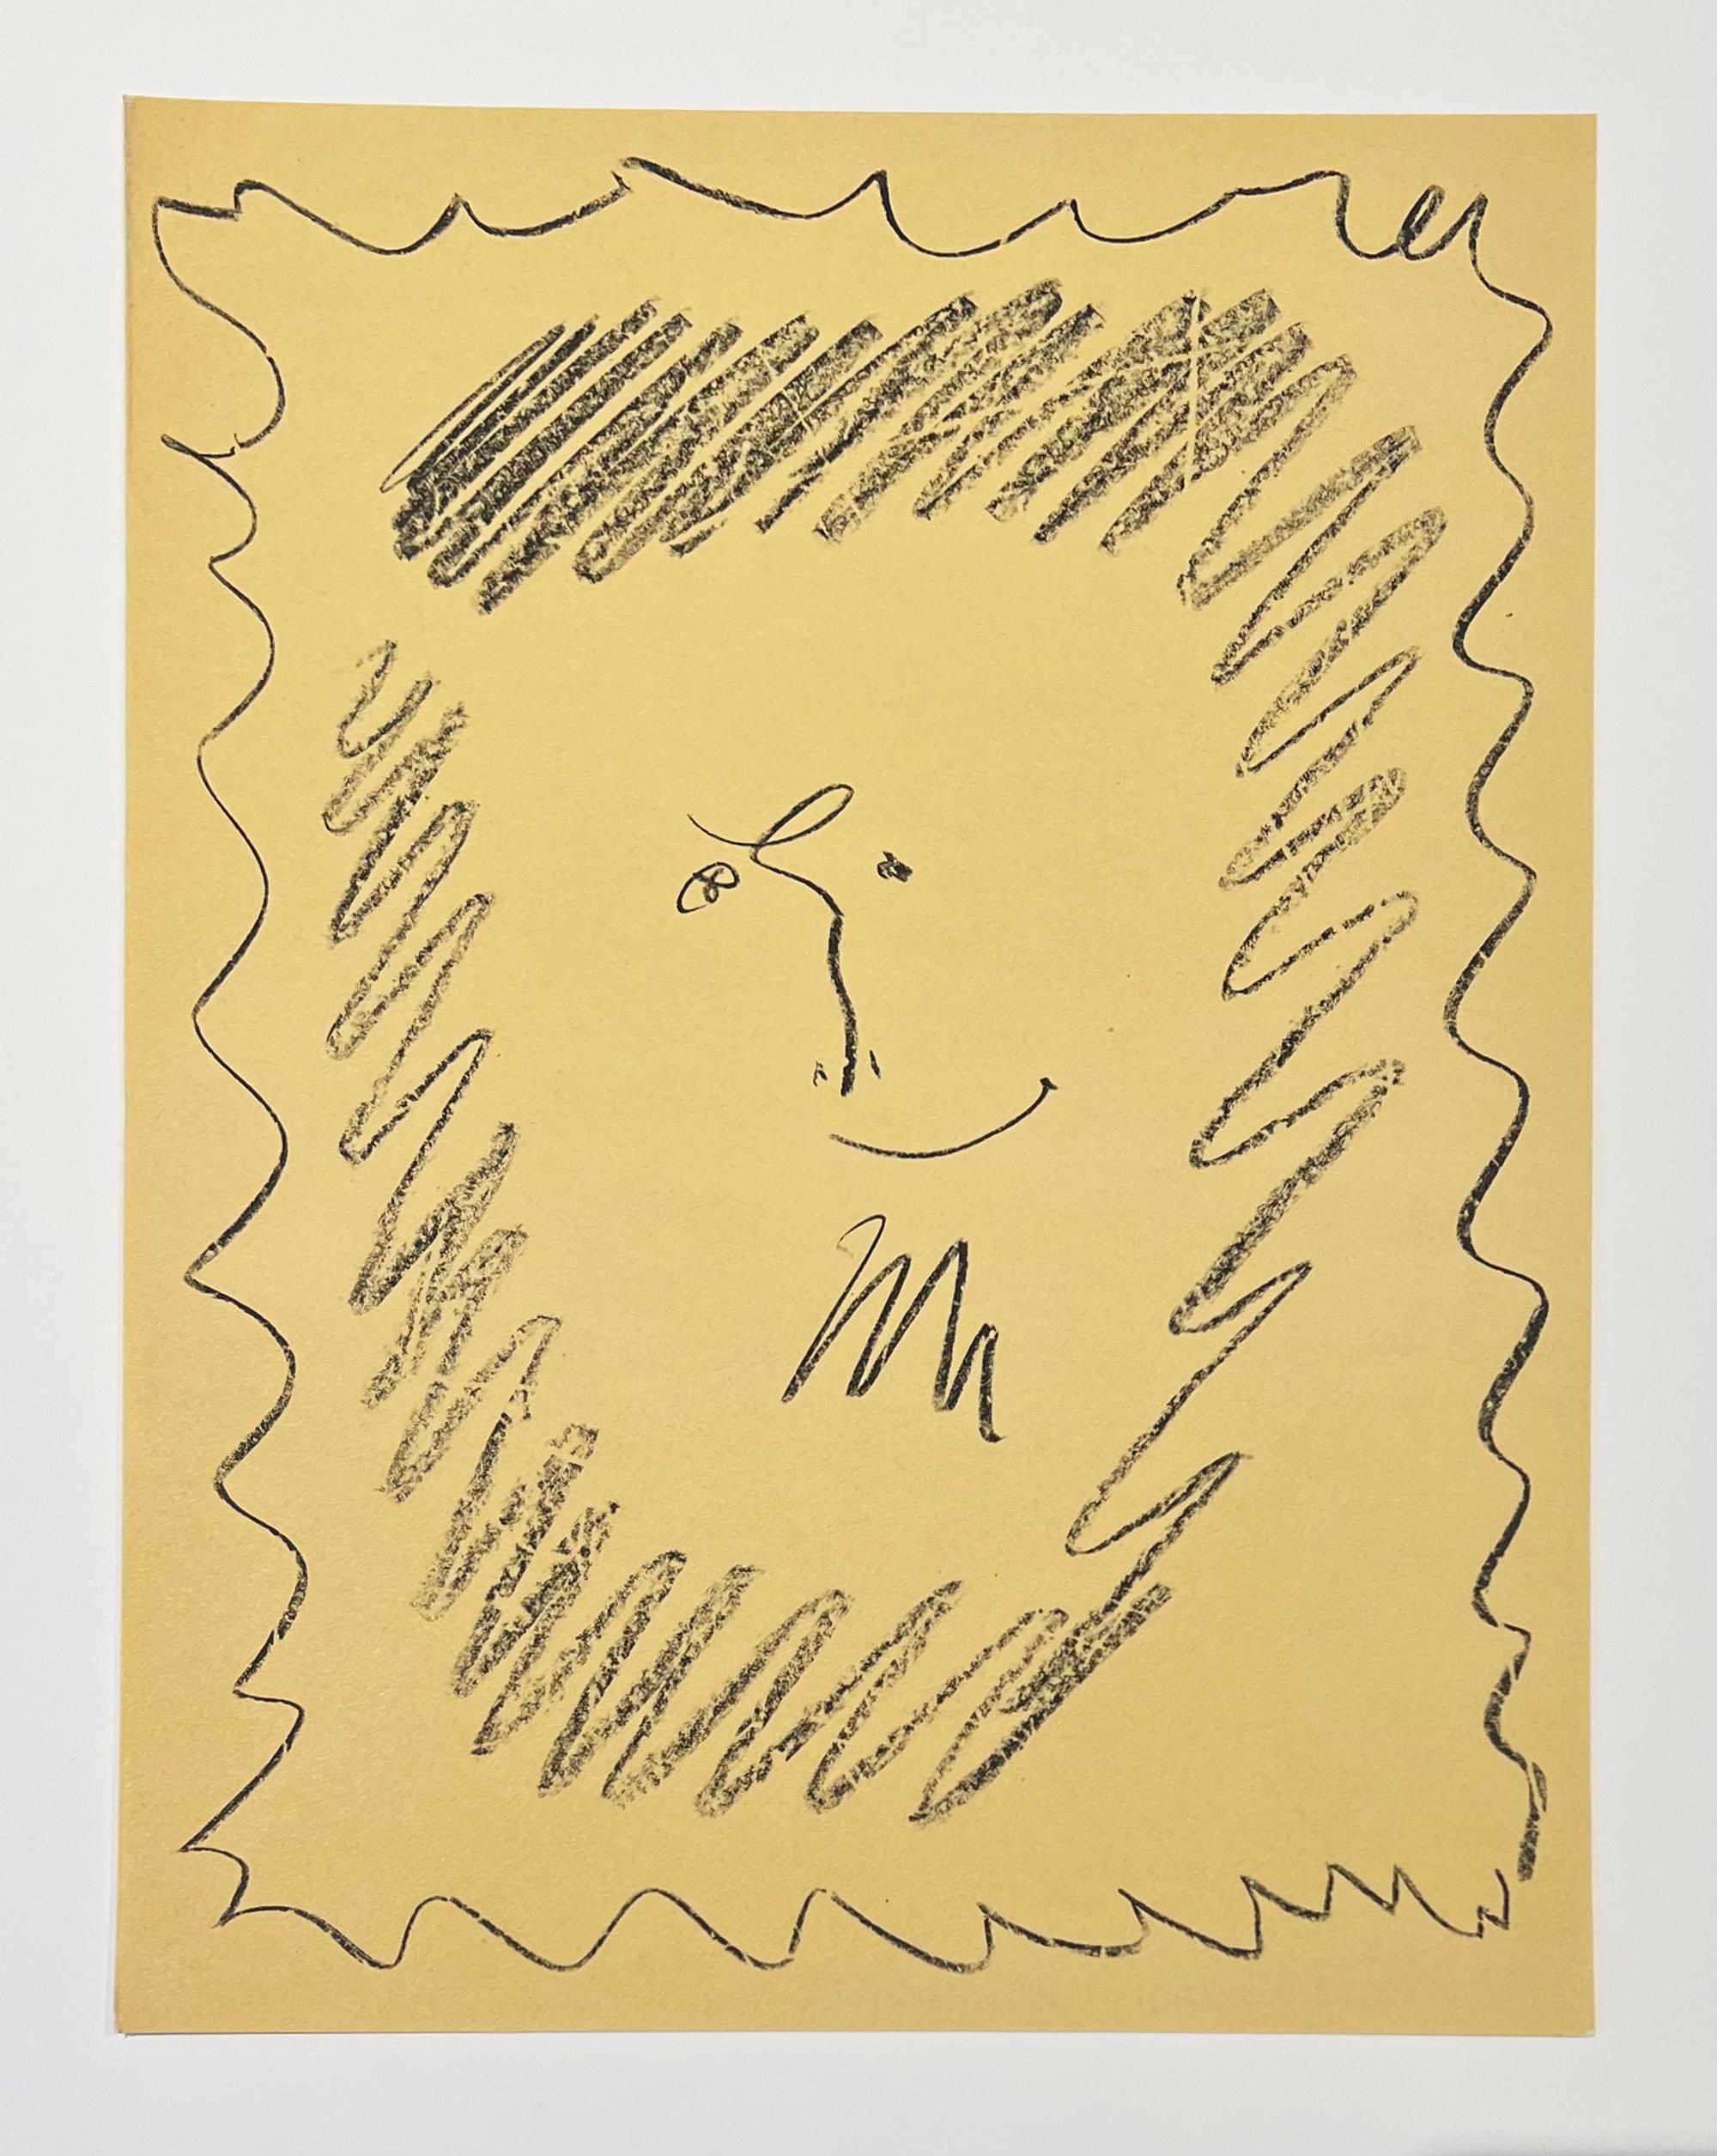 Bacchanale, couverture de la lithographie III de Picasso - Moderne Print par Pablo Picasso